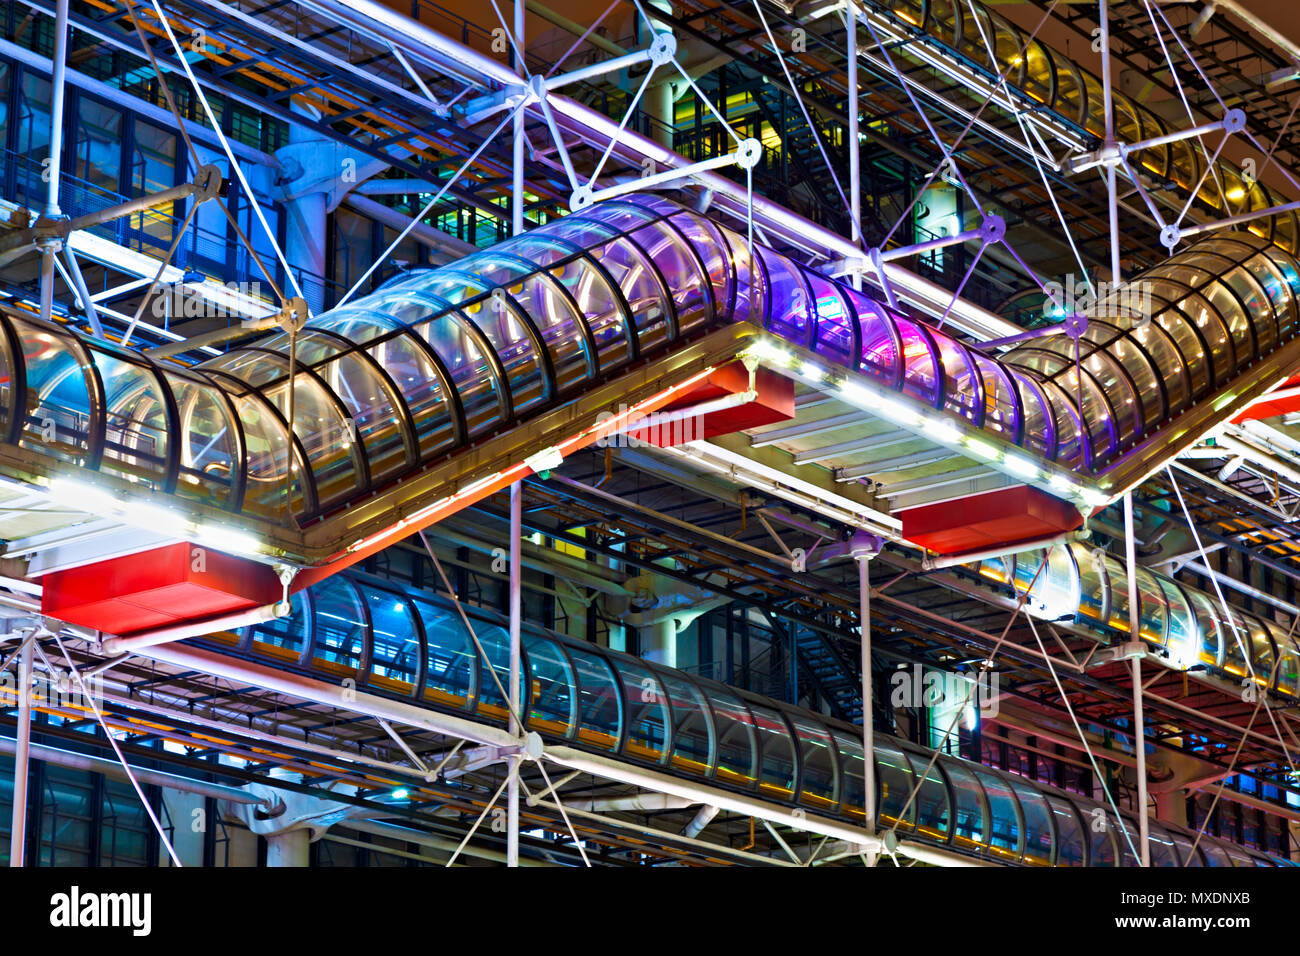 Centre Pompidou, Paris, France. Stock Photo